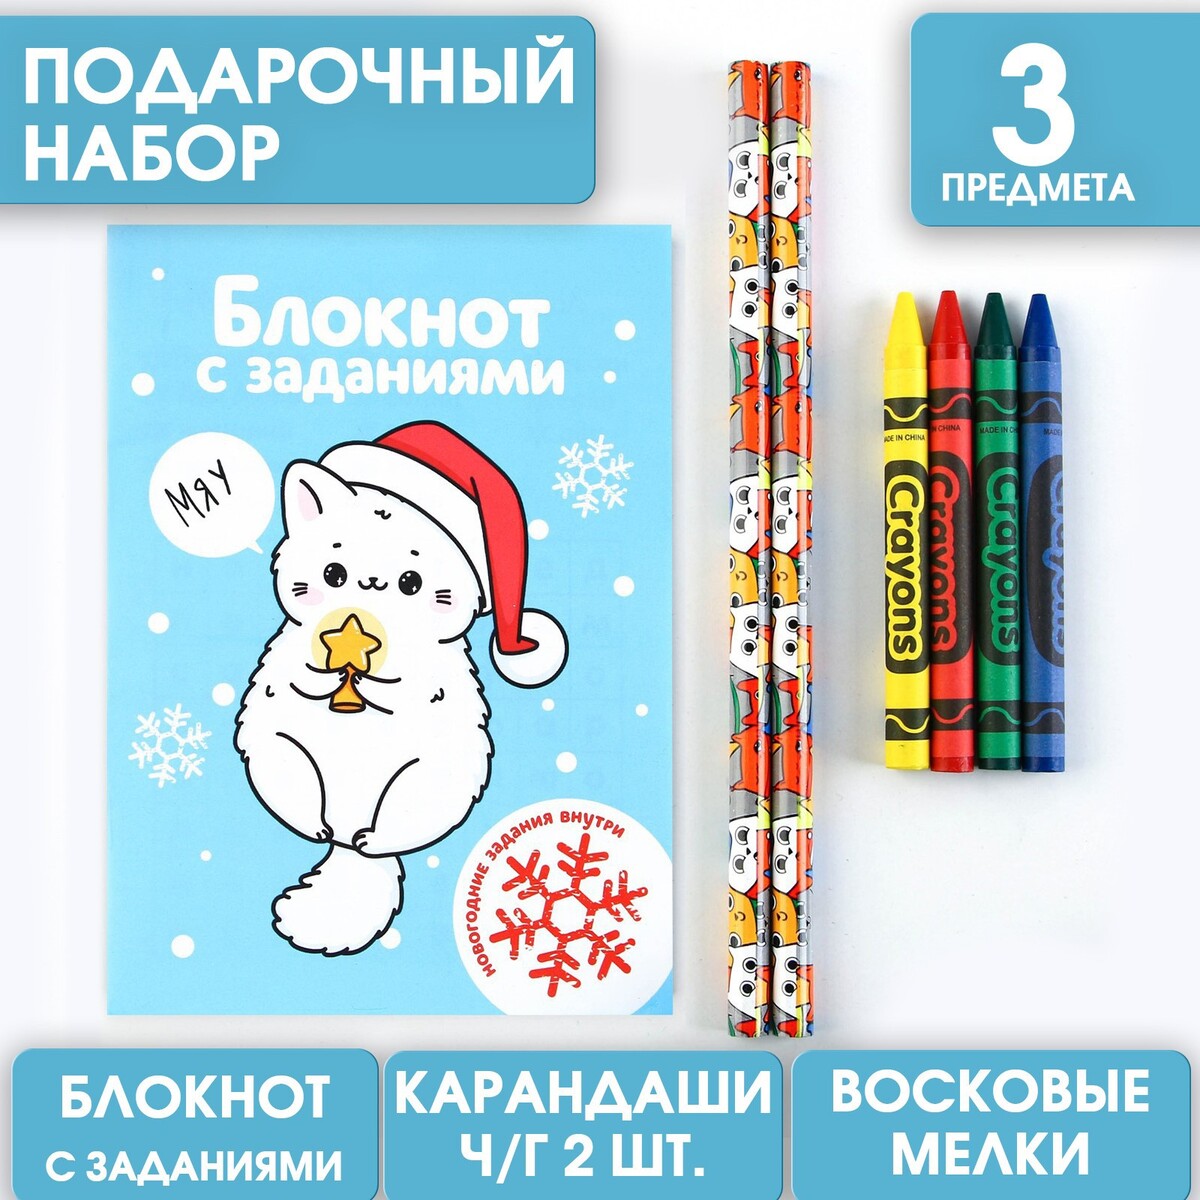 Подарочный набор: блокнот, карандаши ч/г 2 шт и восковые мелки tooky toy восковые карандаши 48 шт